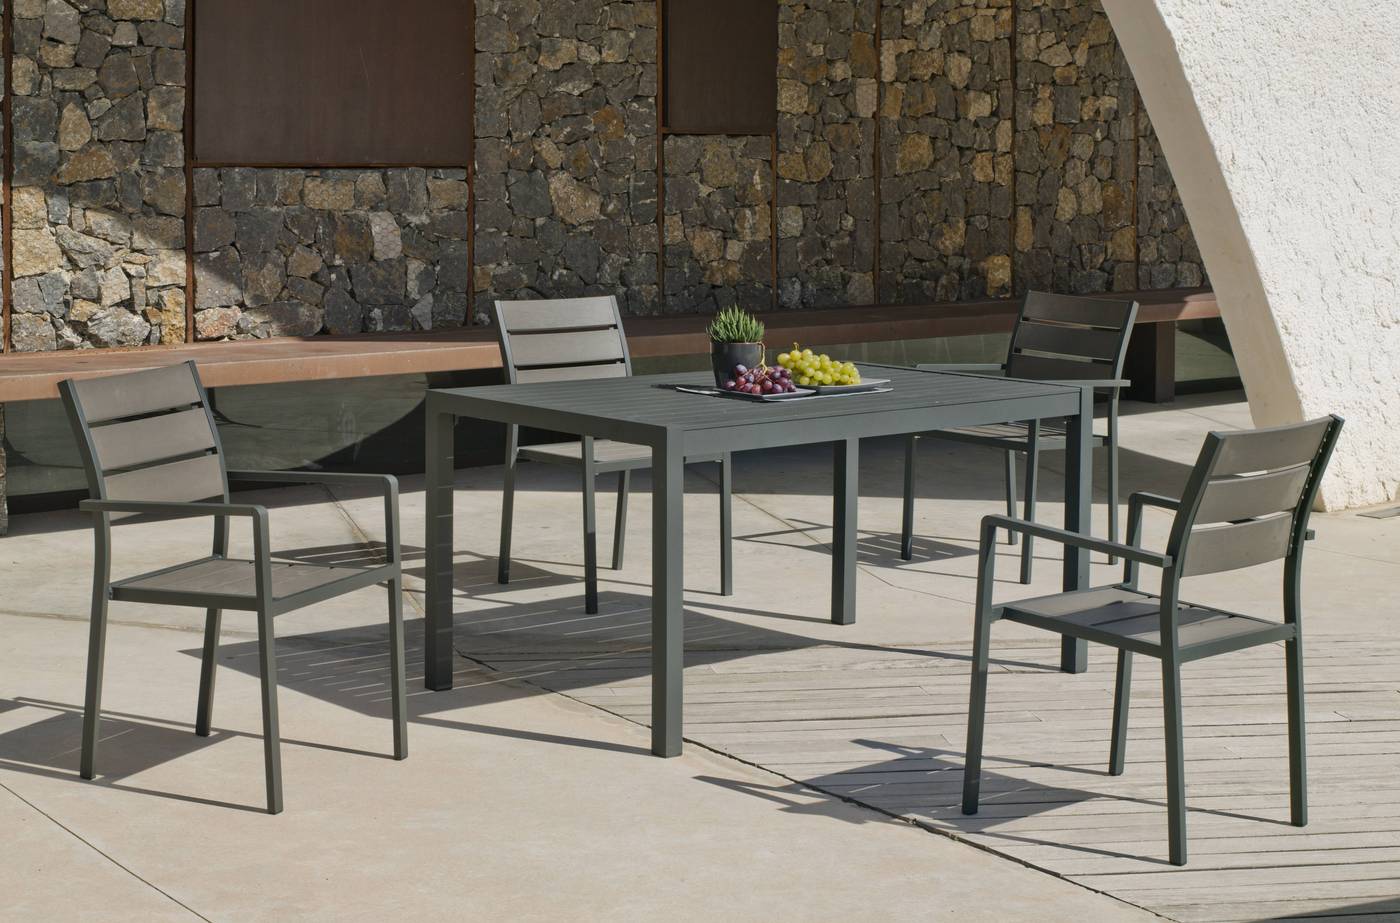 Conjunto aluminio color antracita: Mesa con tablero de lamas de aluminio + 4 sillones con asiento y respado de lamas de poliwood.